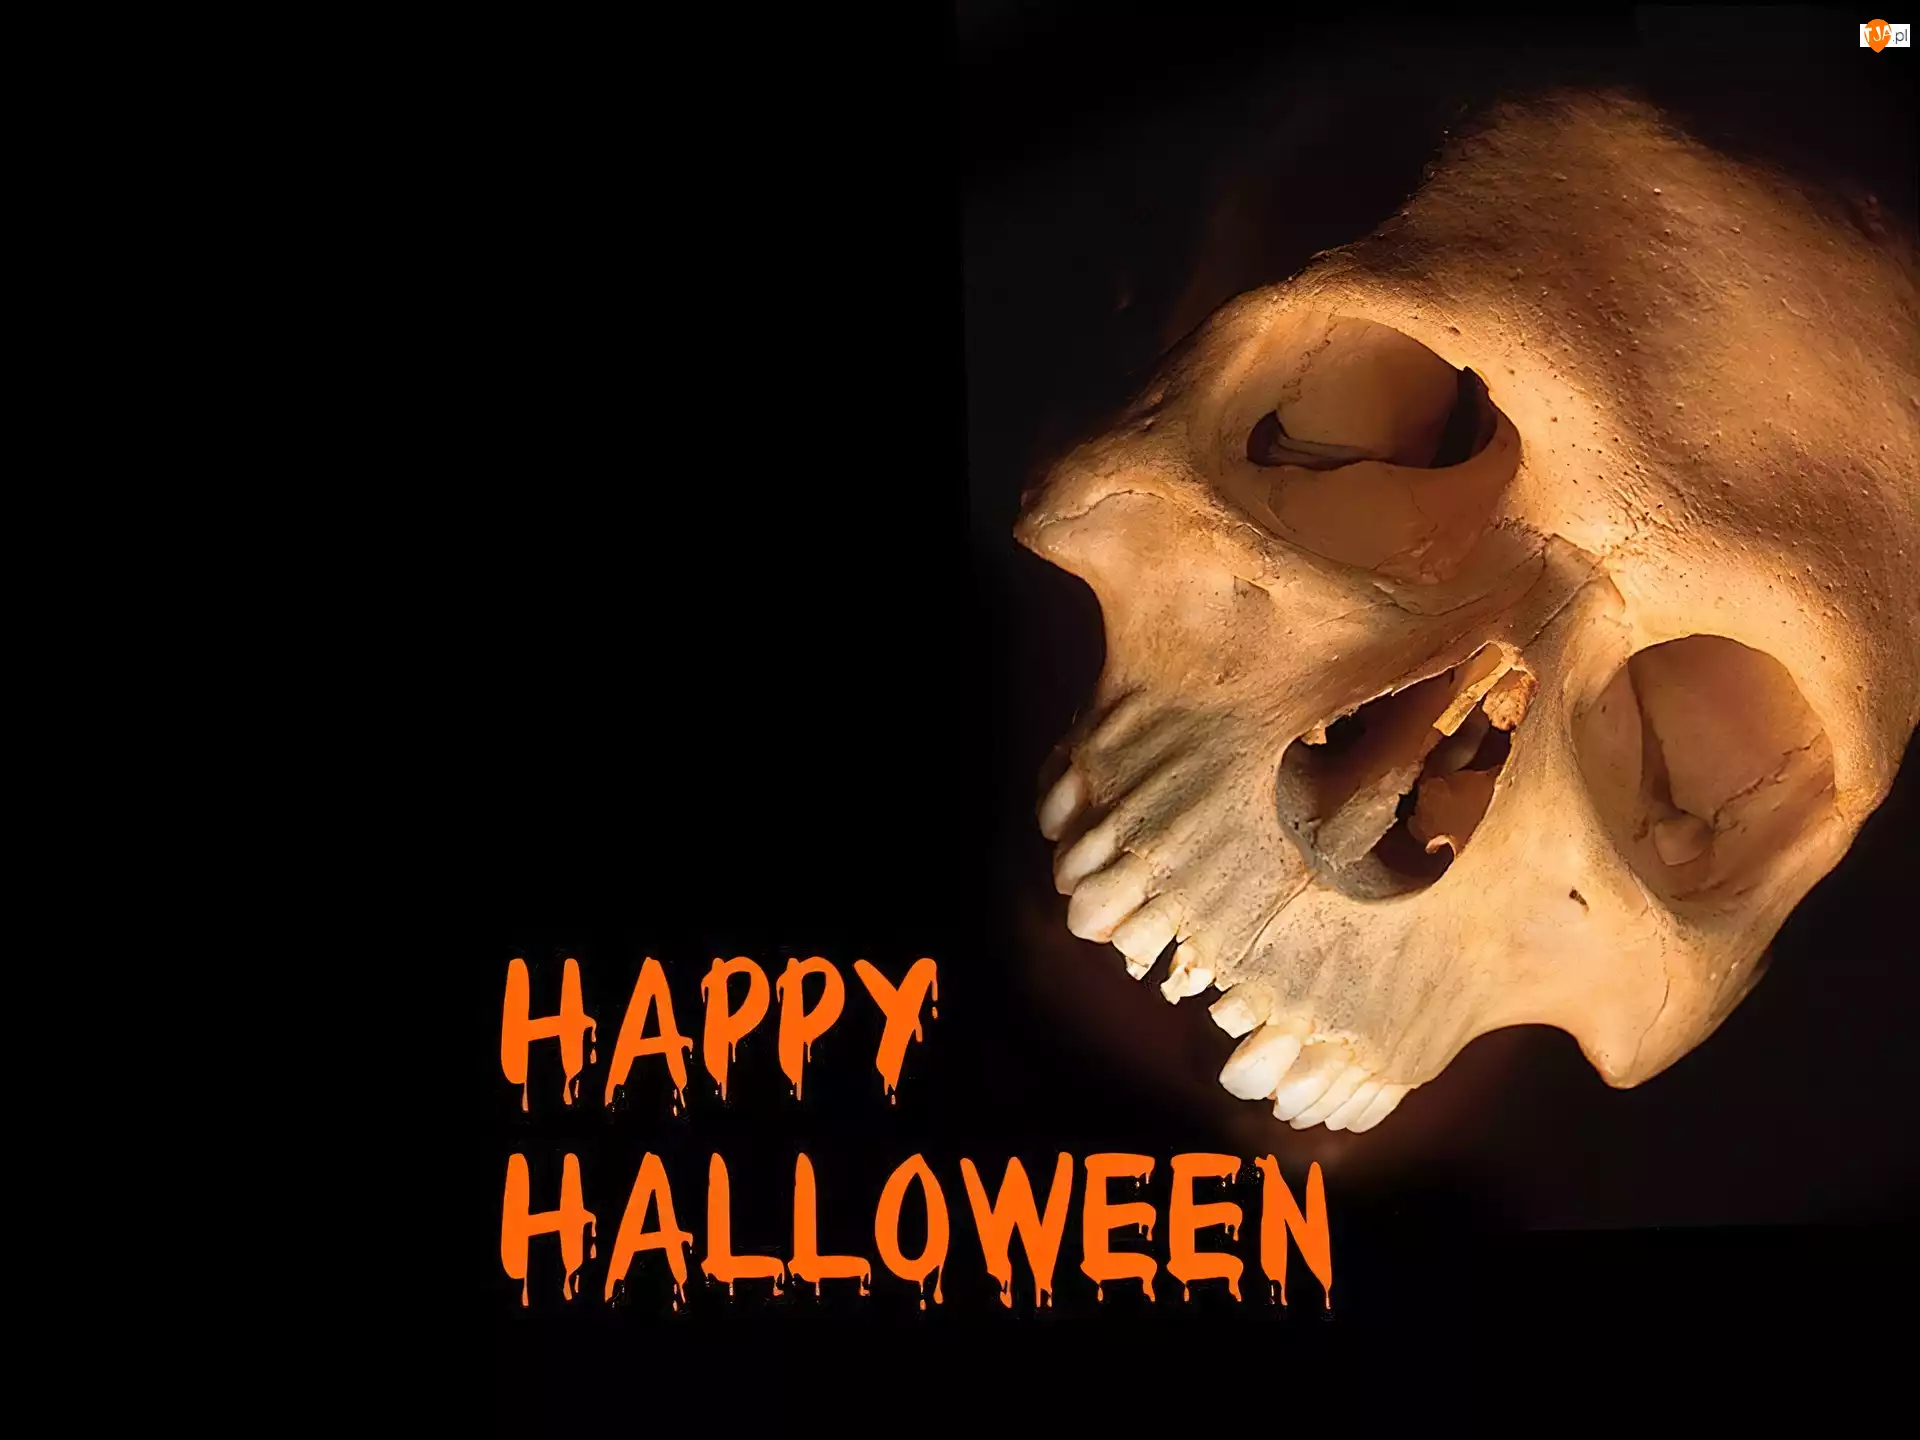 czaszka, Halloween